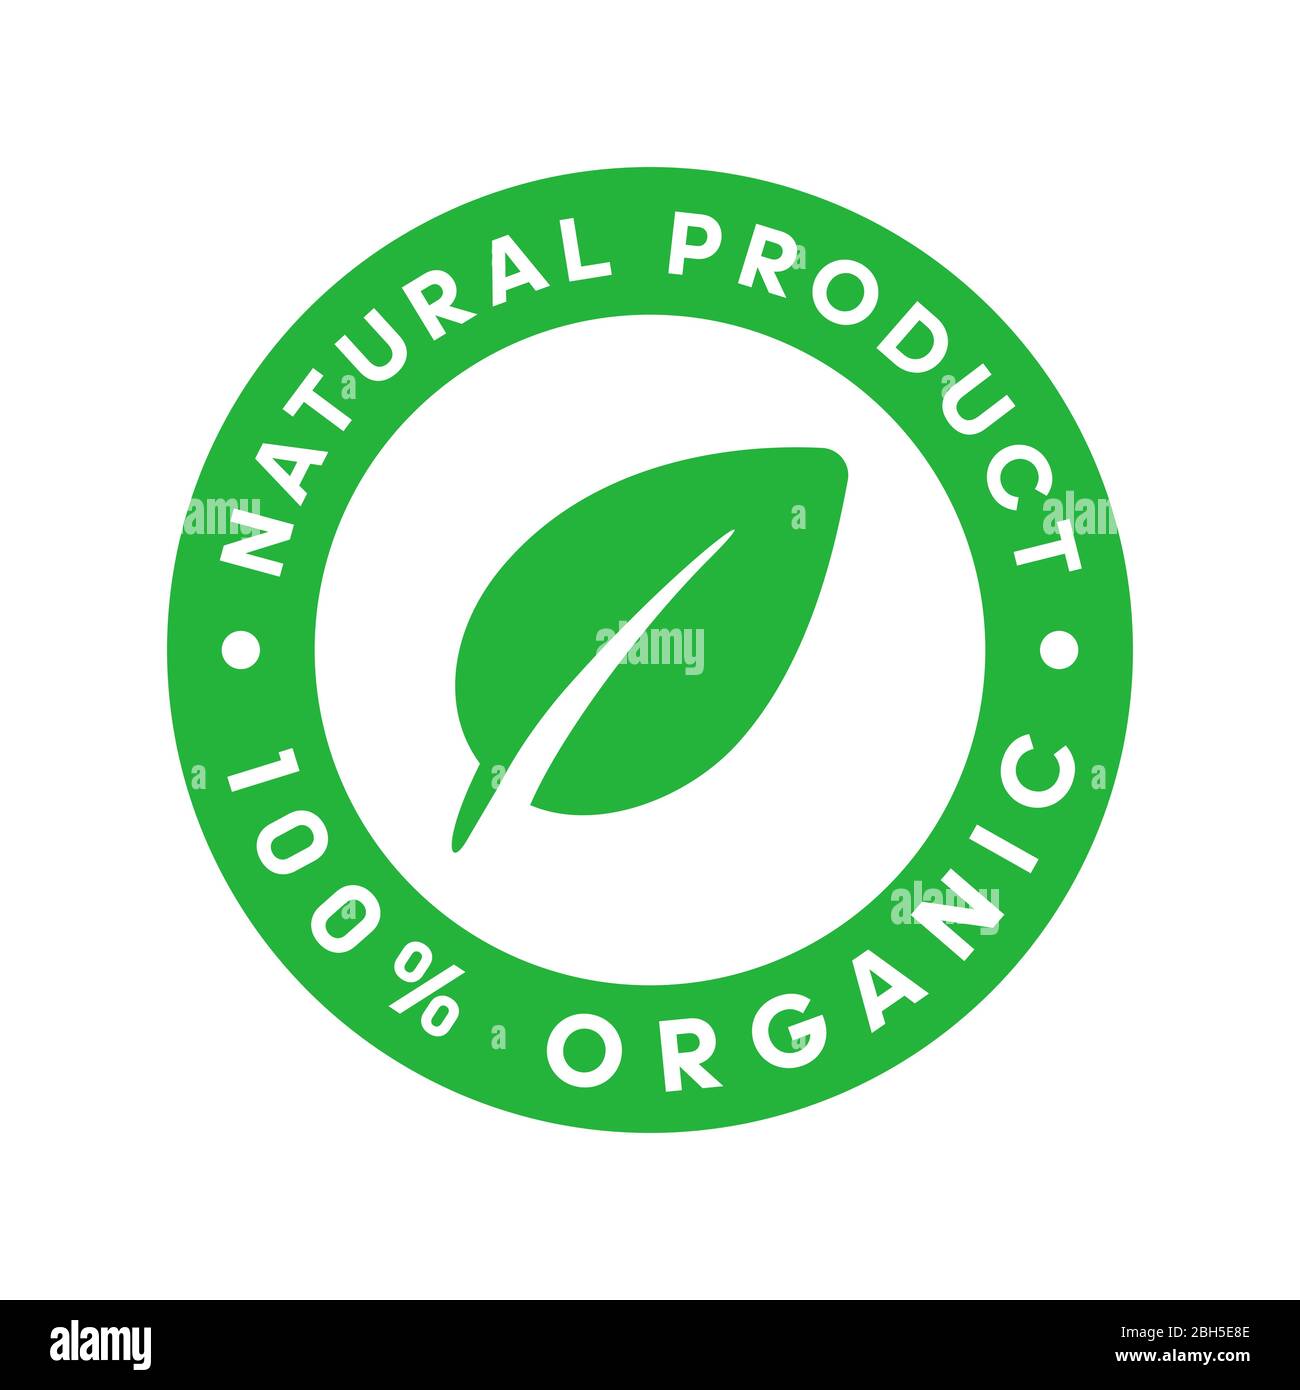 Prodotto naturale adesivo organico 100% verde con foglia al centro.  Elemento di progettazione per il design del packaging e materiale  promozionale. Vettore Immagine e Vettoriale - Alamy